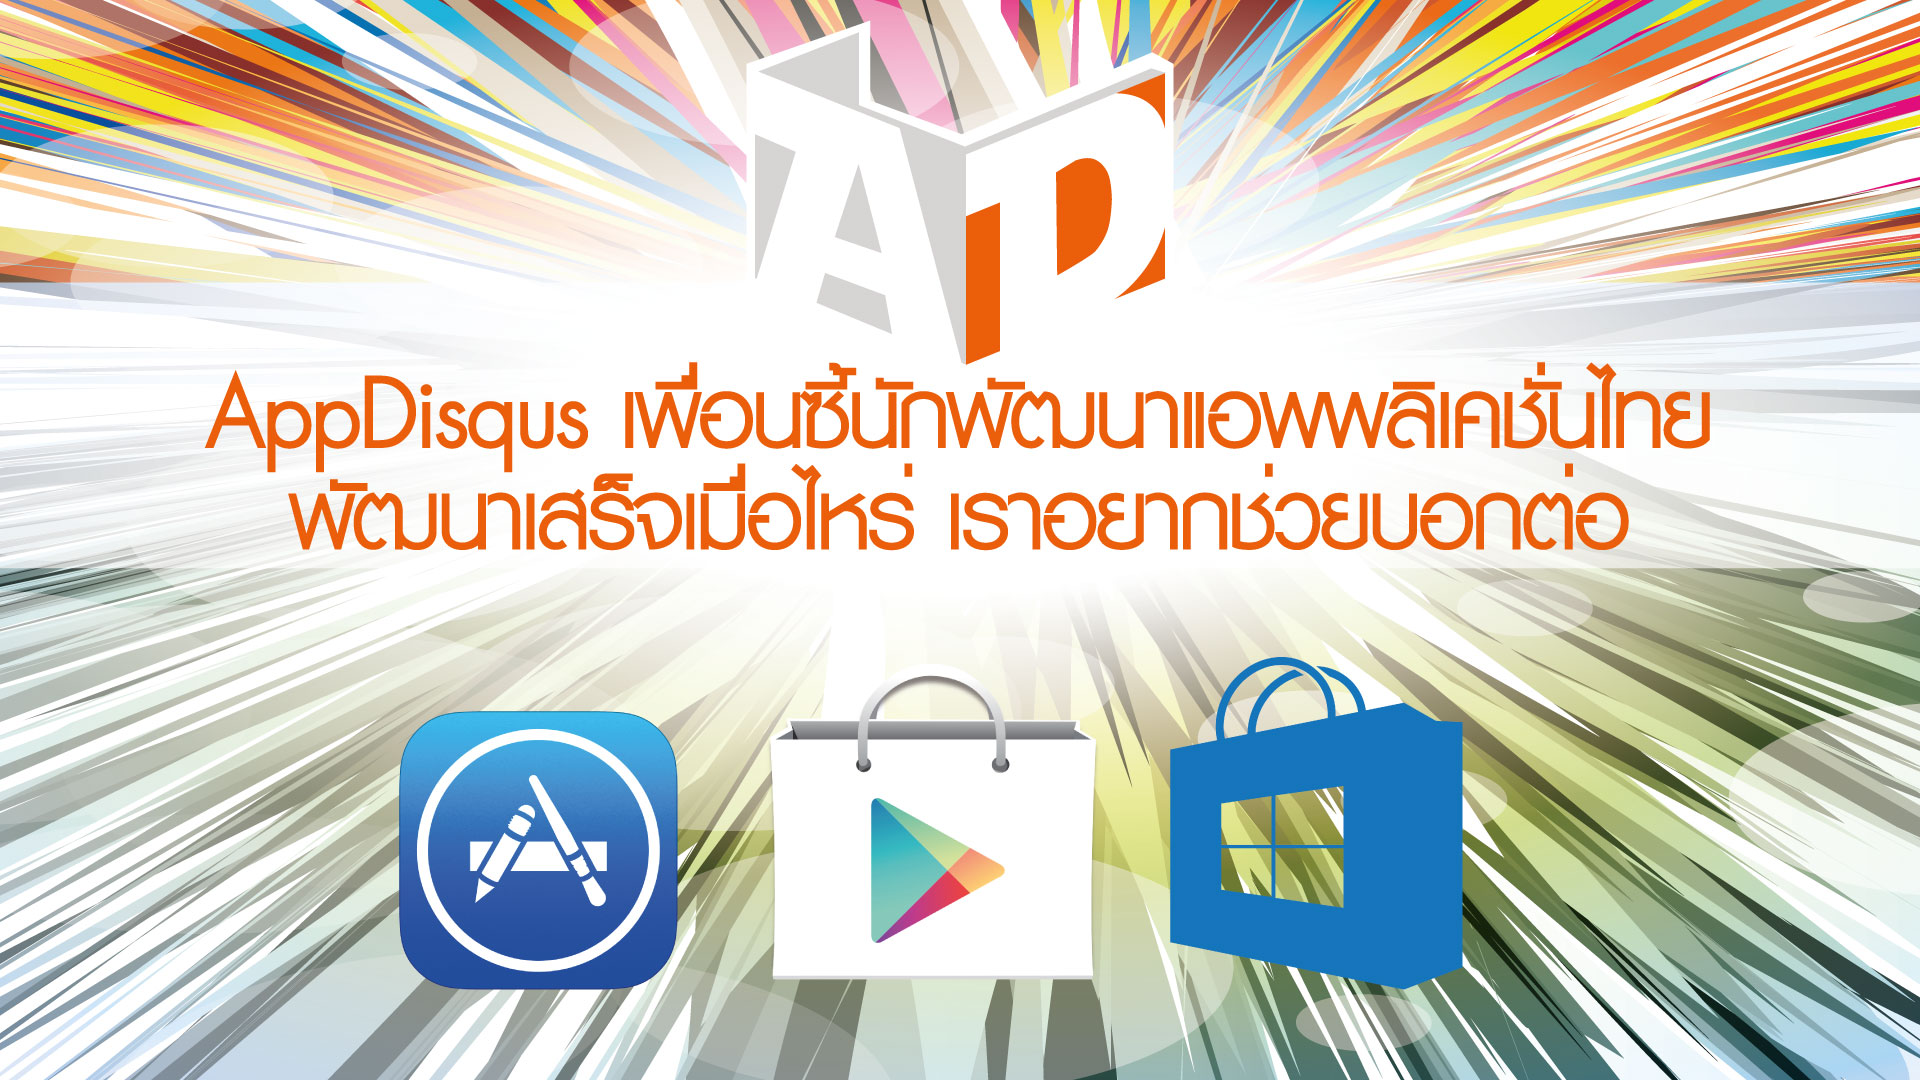 Appdisqus เพื่อนซี้ 01 824571 | Application | Appdisqus เพื่อนซื้นักพัฒนาแอพไทย สนับสนุนแอพผลงานชาวไทย ส่งข้อมูลให้เรากระจายข่าวประชาสัมพันธ์ได้ตั้งแต่วันนี้